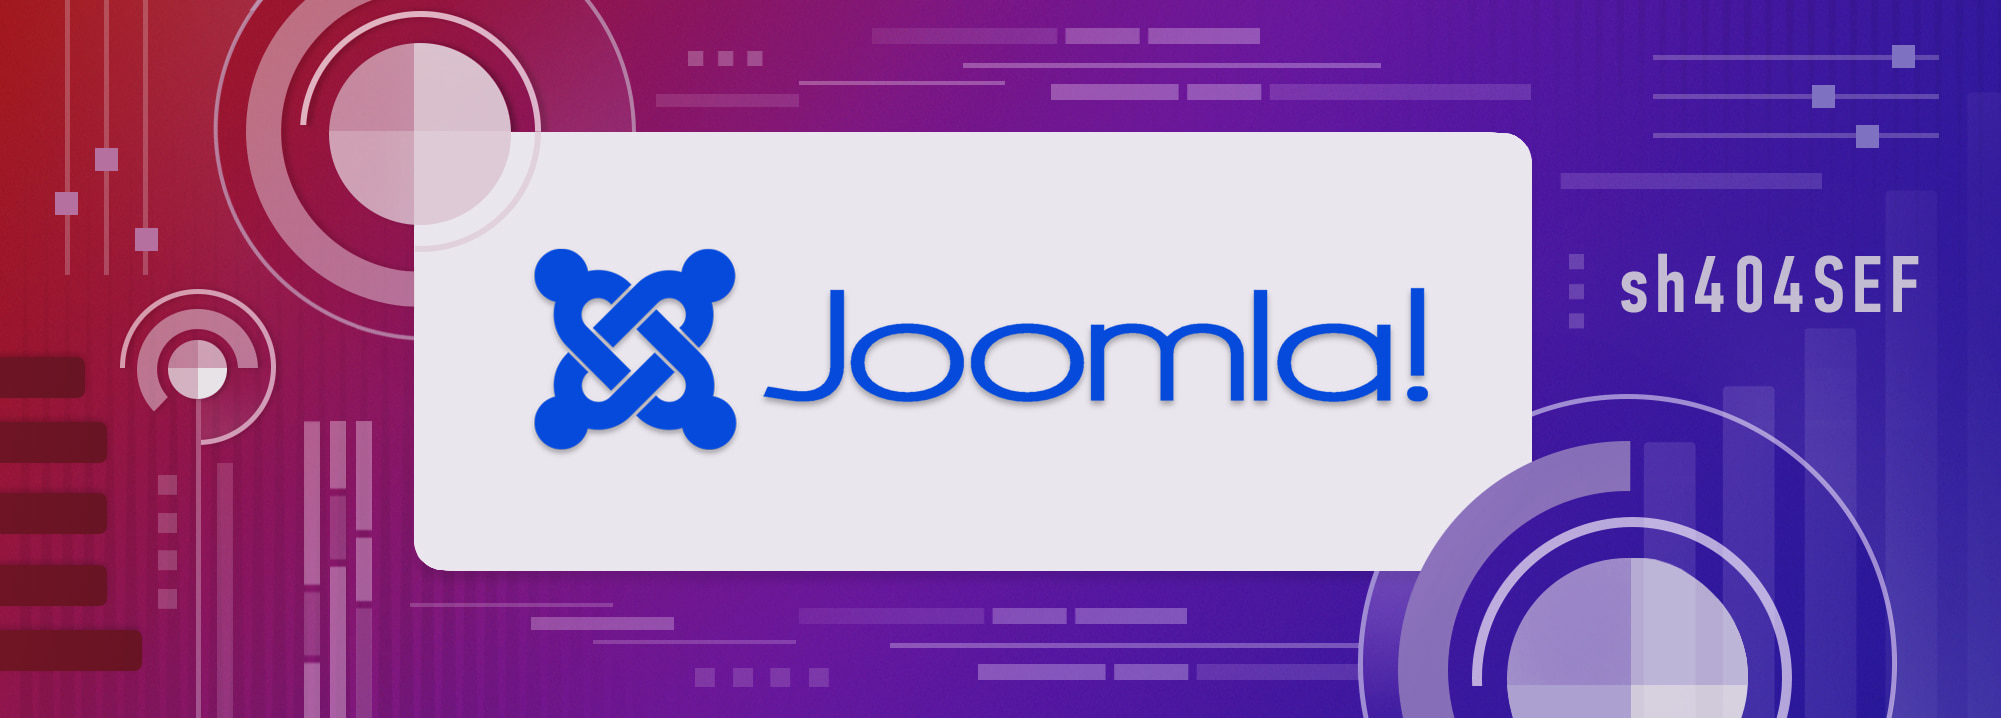 Joomla - отличная альтернатива WordPress